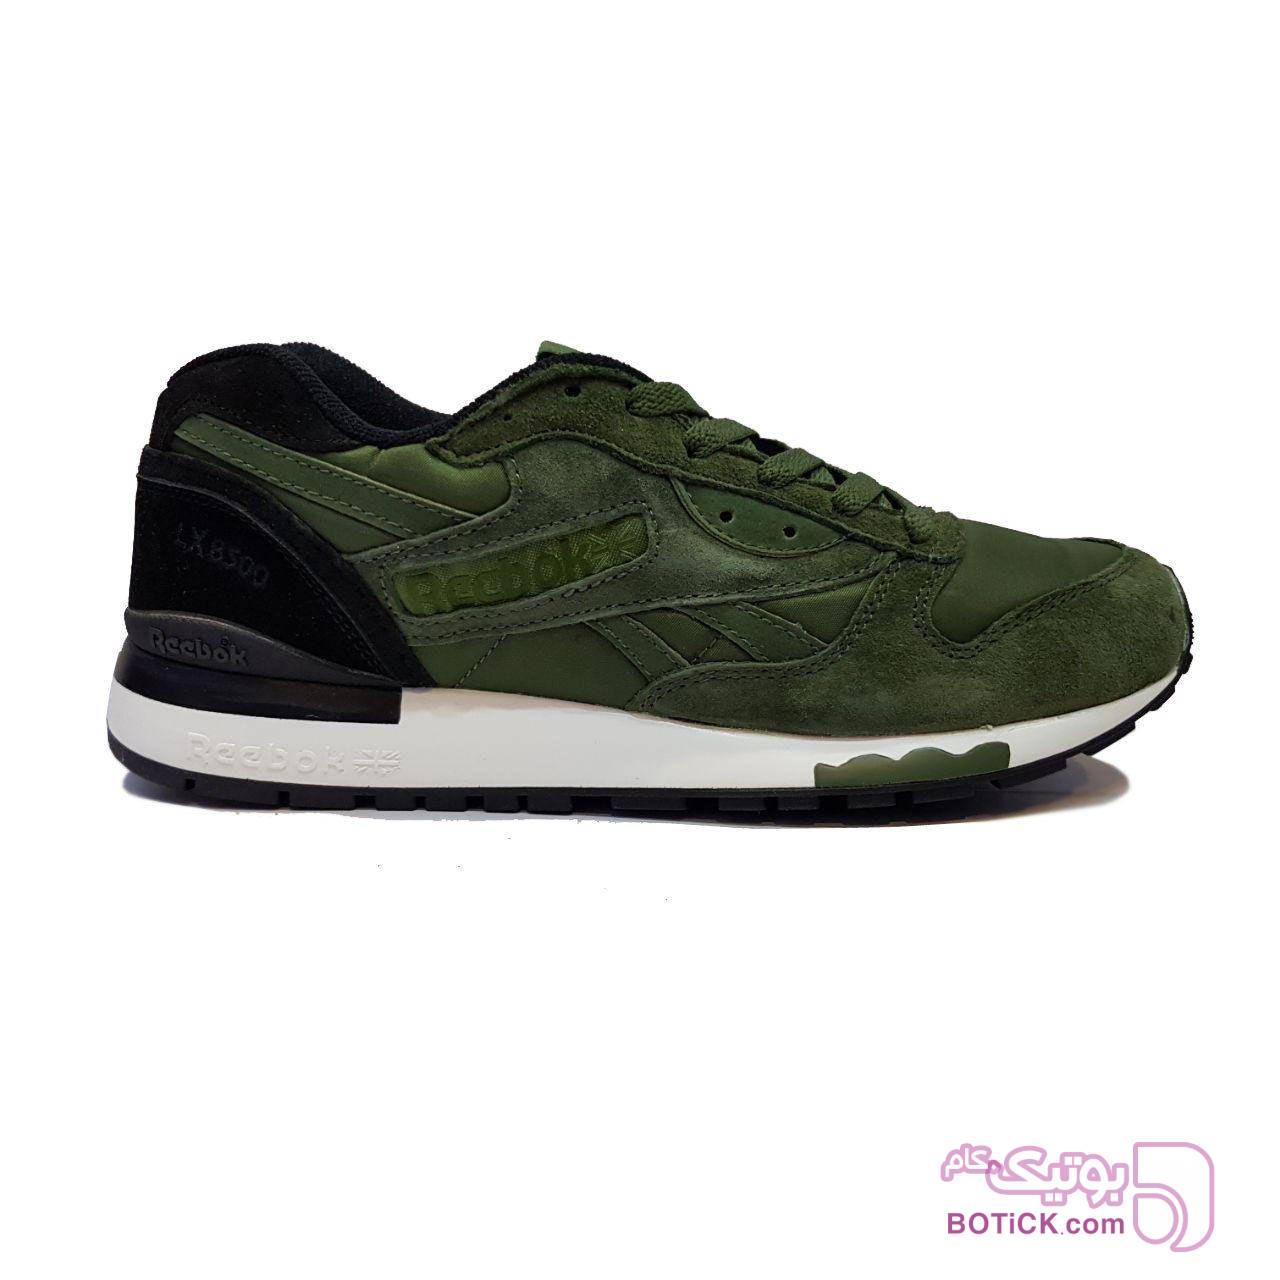 کفش پیاده روی ریبوک Reebok lx 8500 سبز از فروشگاه فروشگاه مدشو | بوتیک